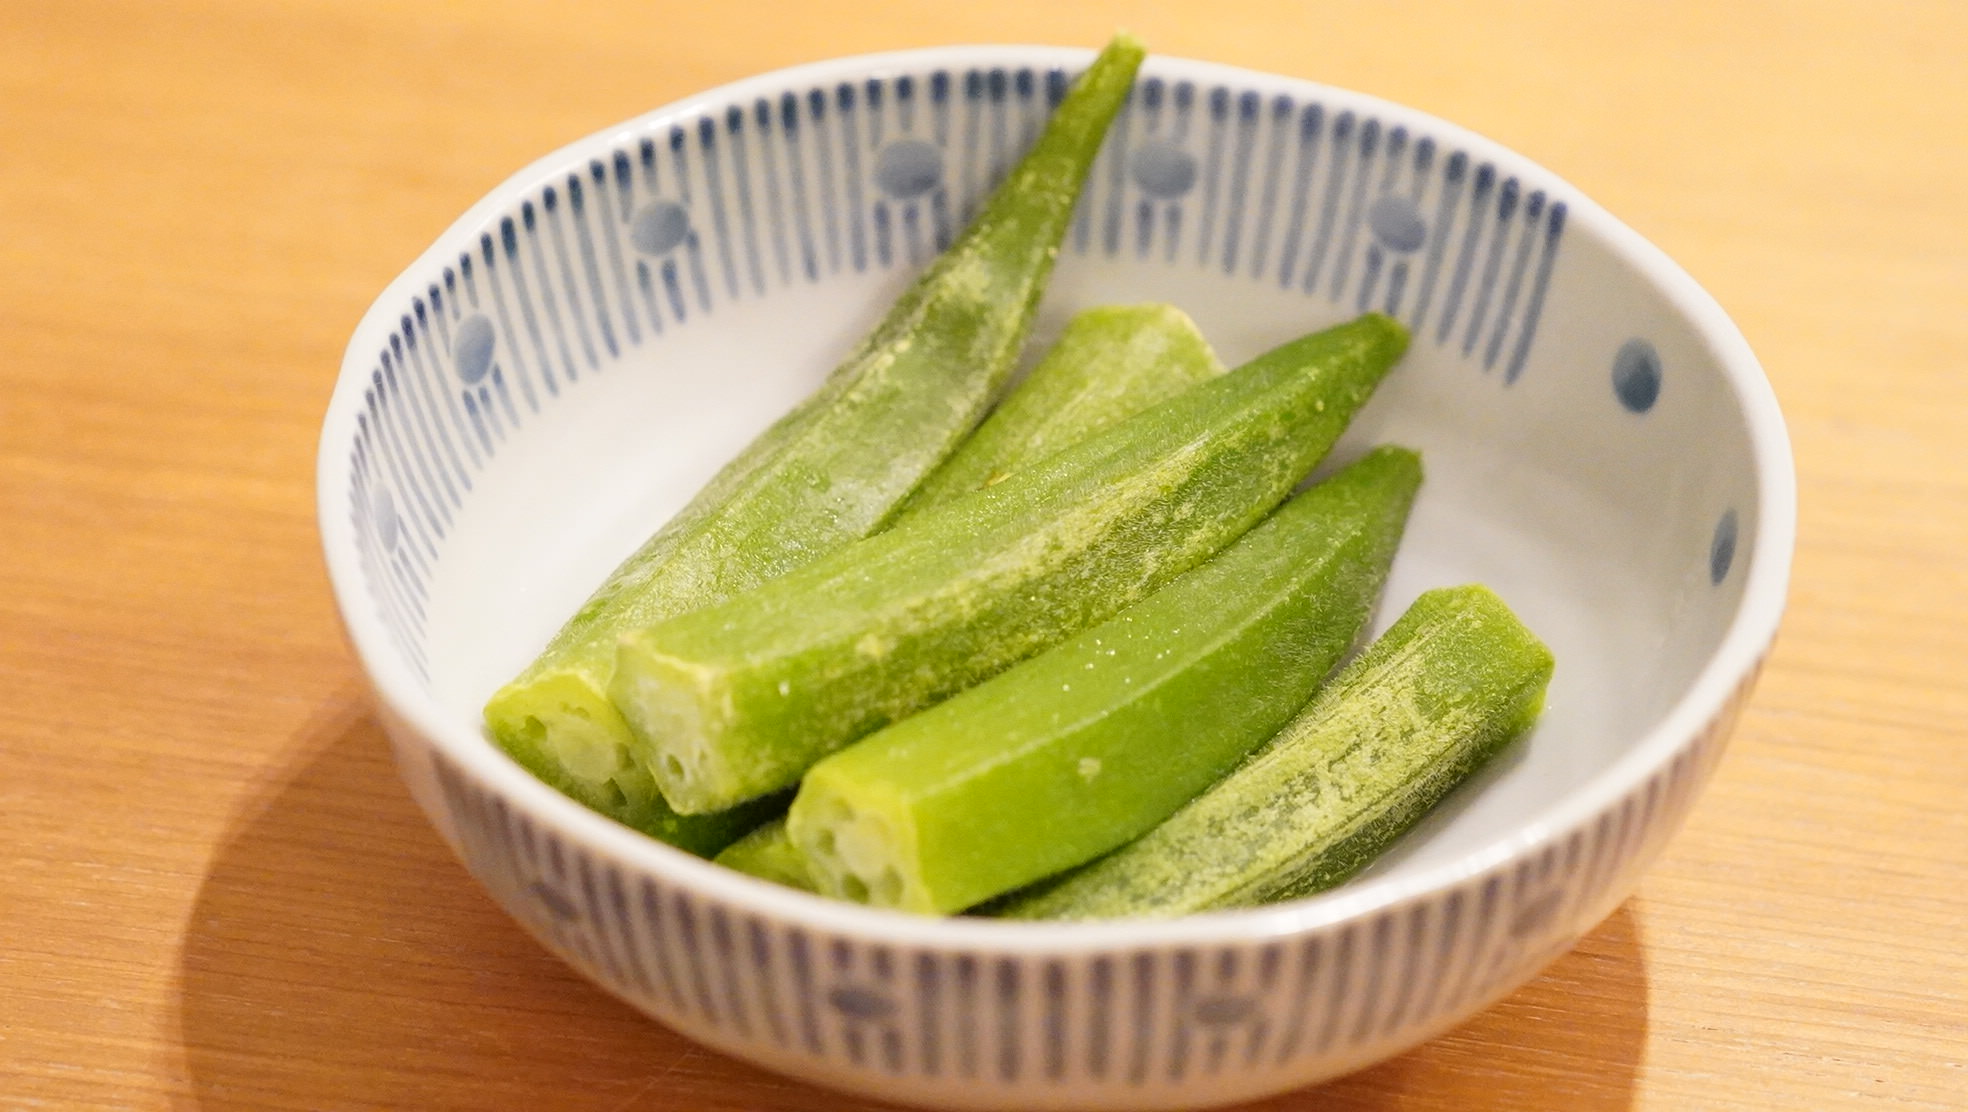 生協coop宅配の冷凍食品「九州産オクラ」を皿に盛りつけた写真